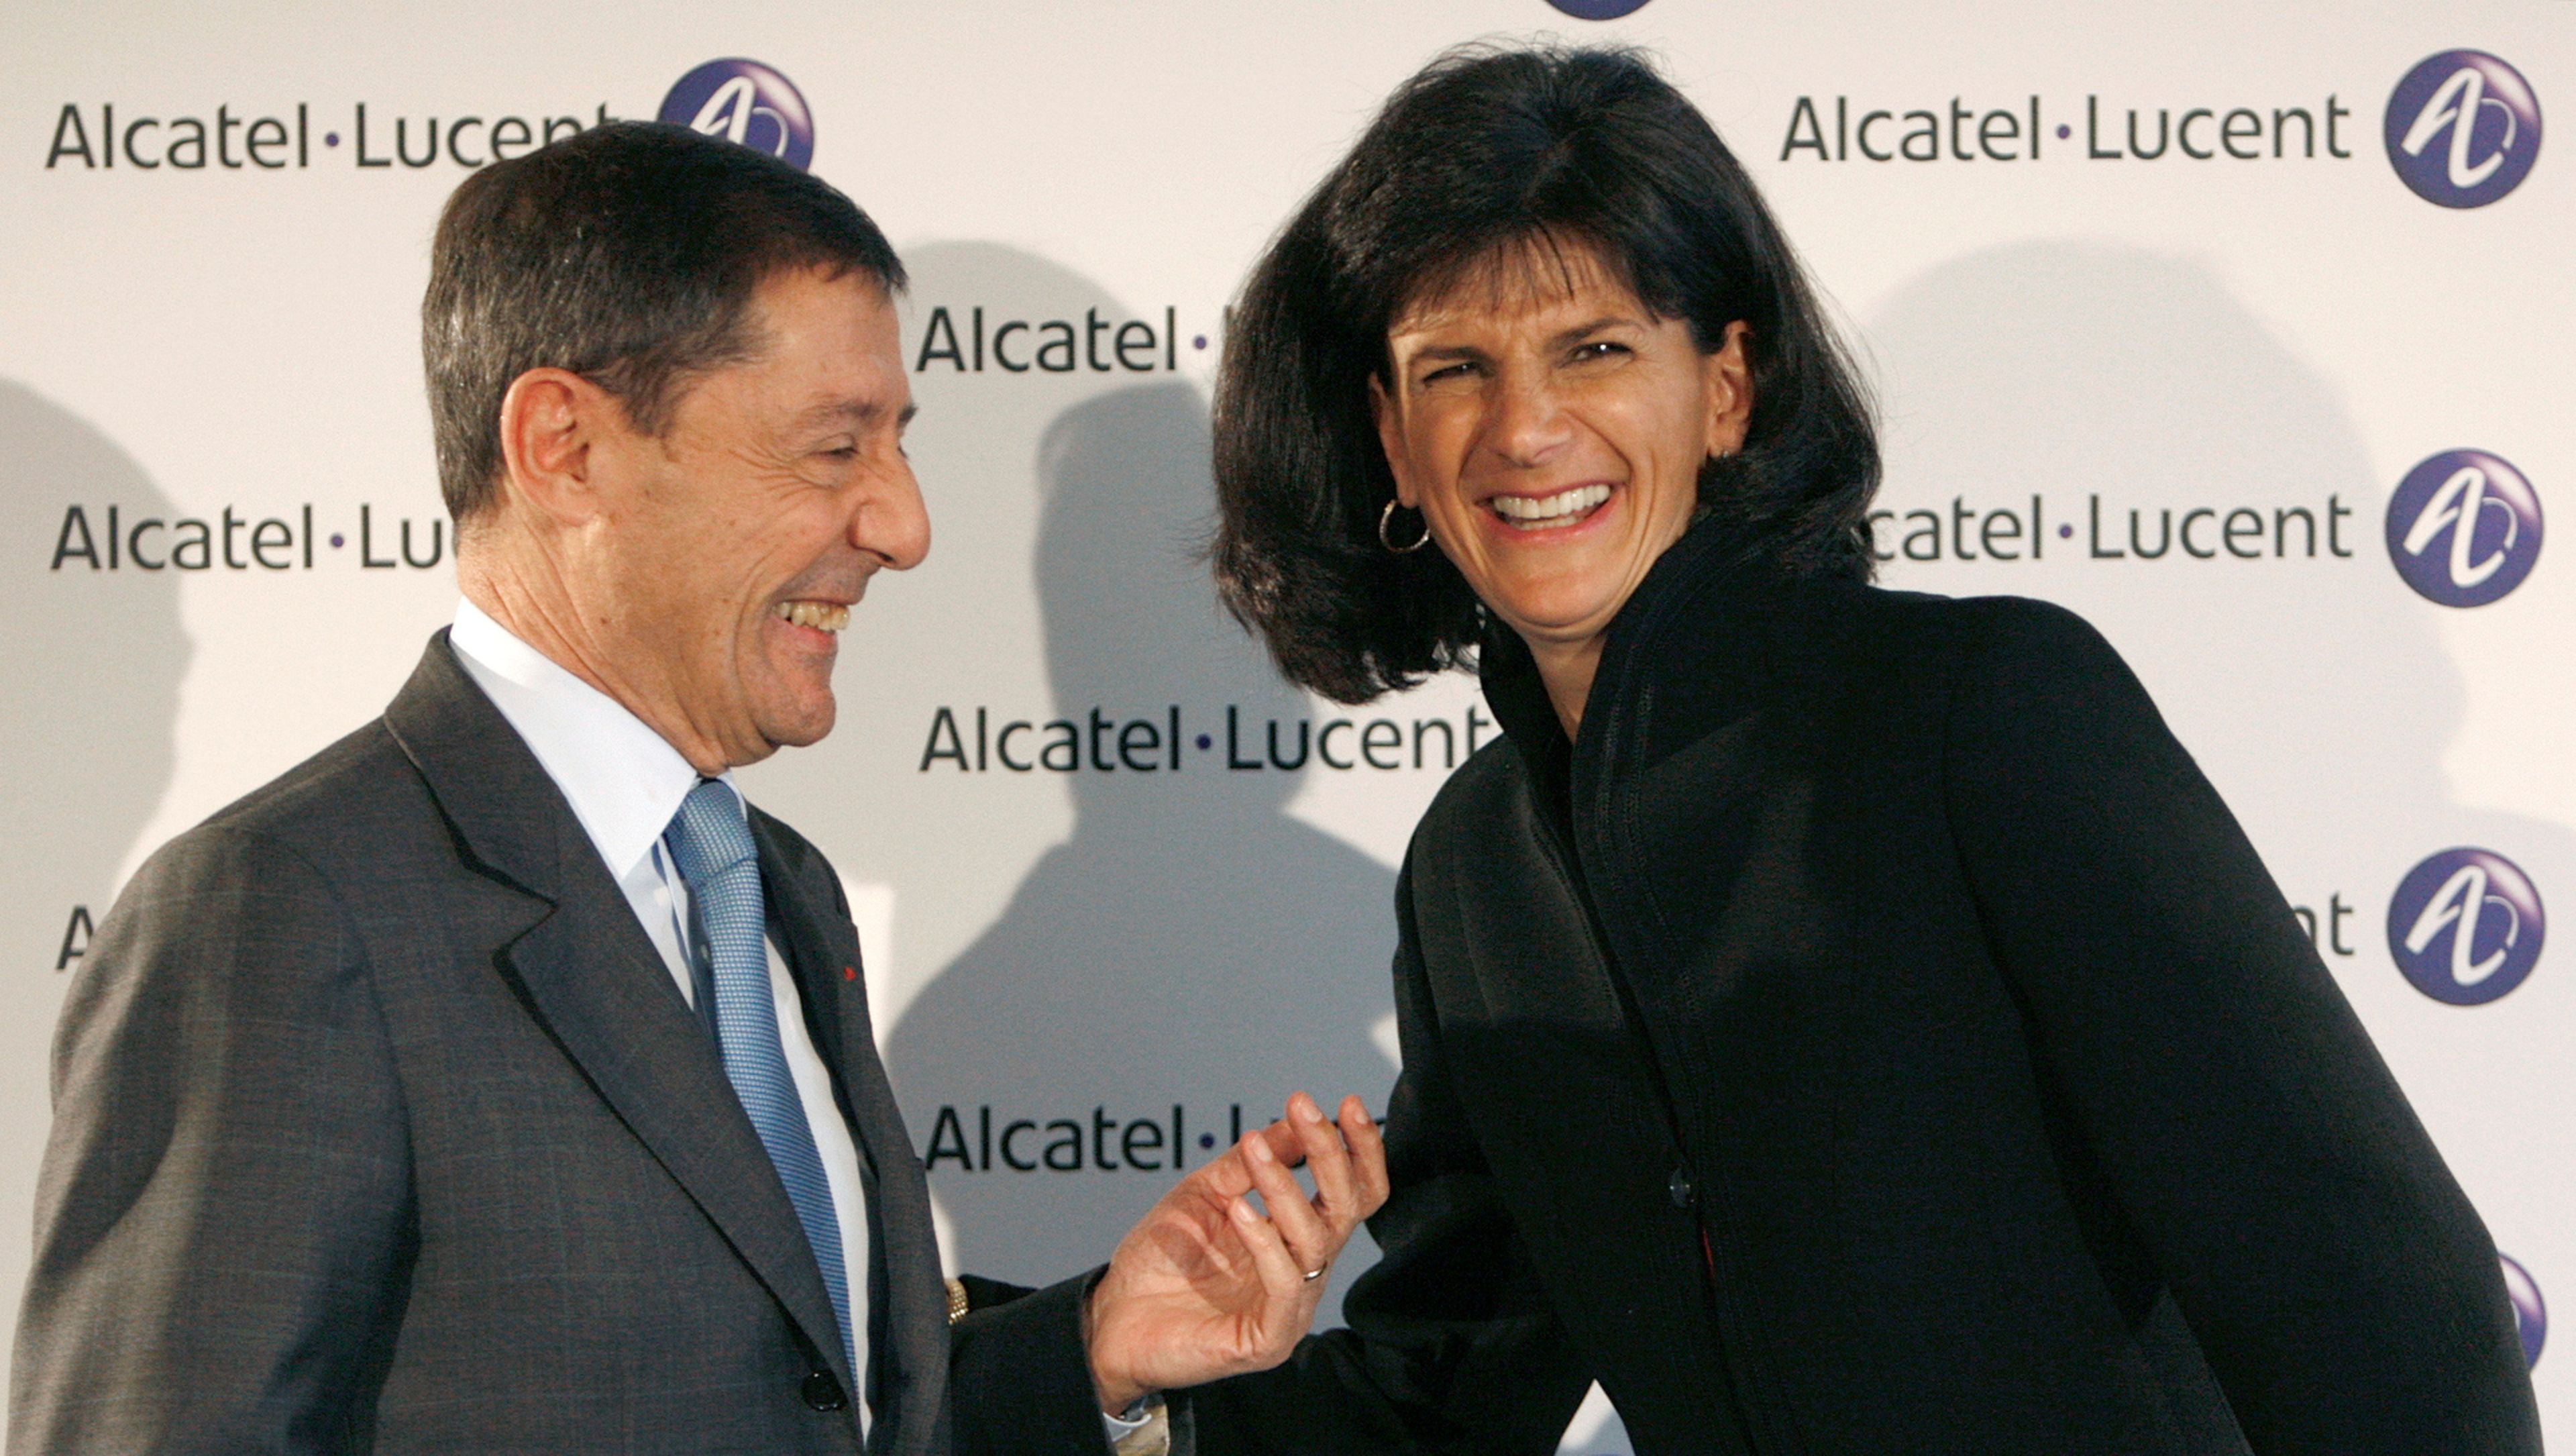 El presidente de Alcatel, Serge Tchuruk, y la CEO de Lucent, Patricia Russo, en su primera rueda de prensa tras la fusión.